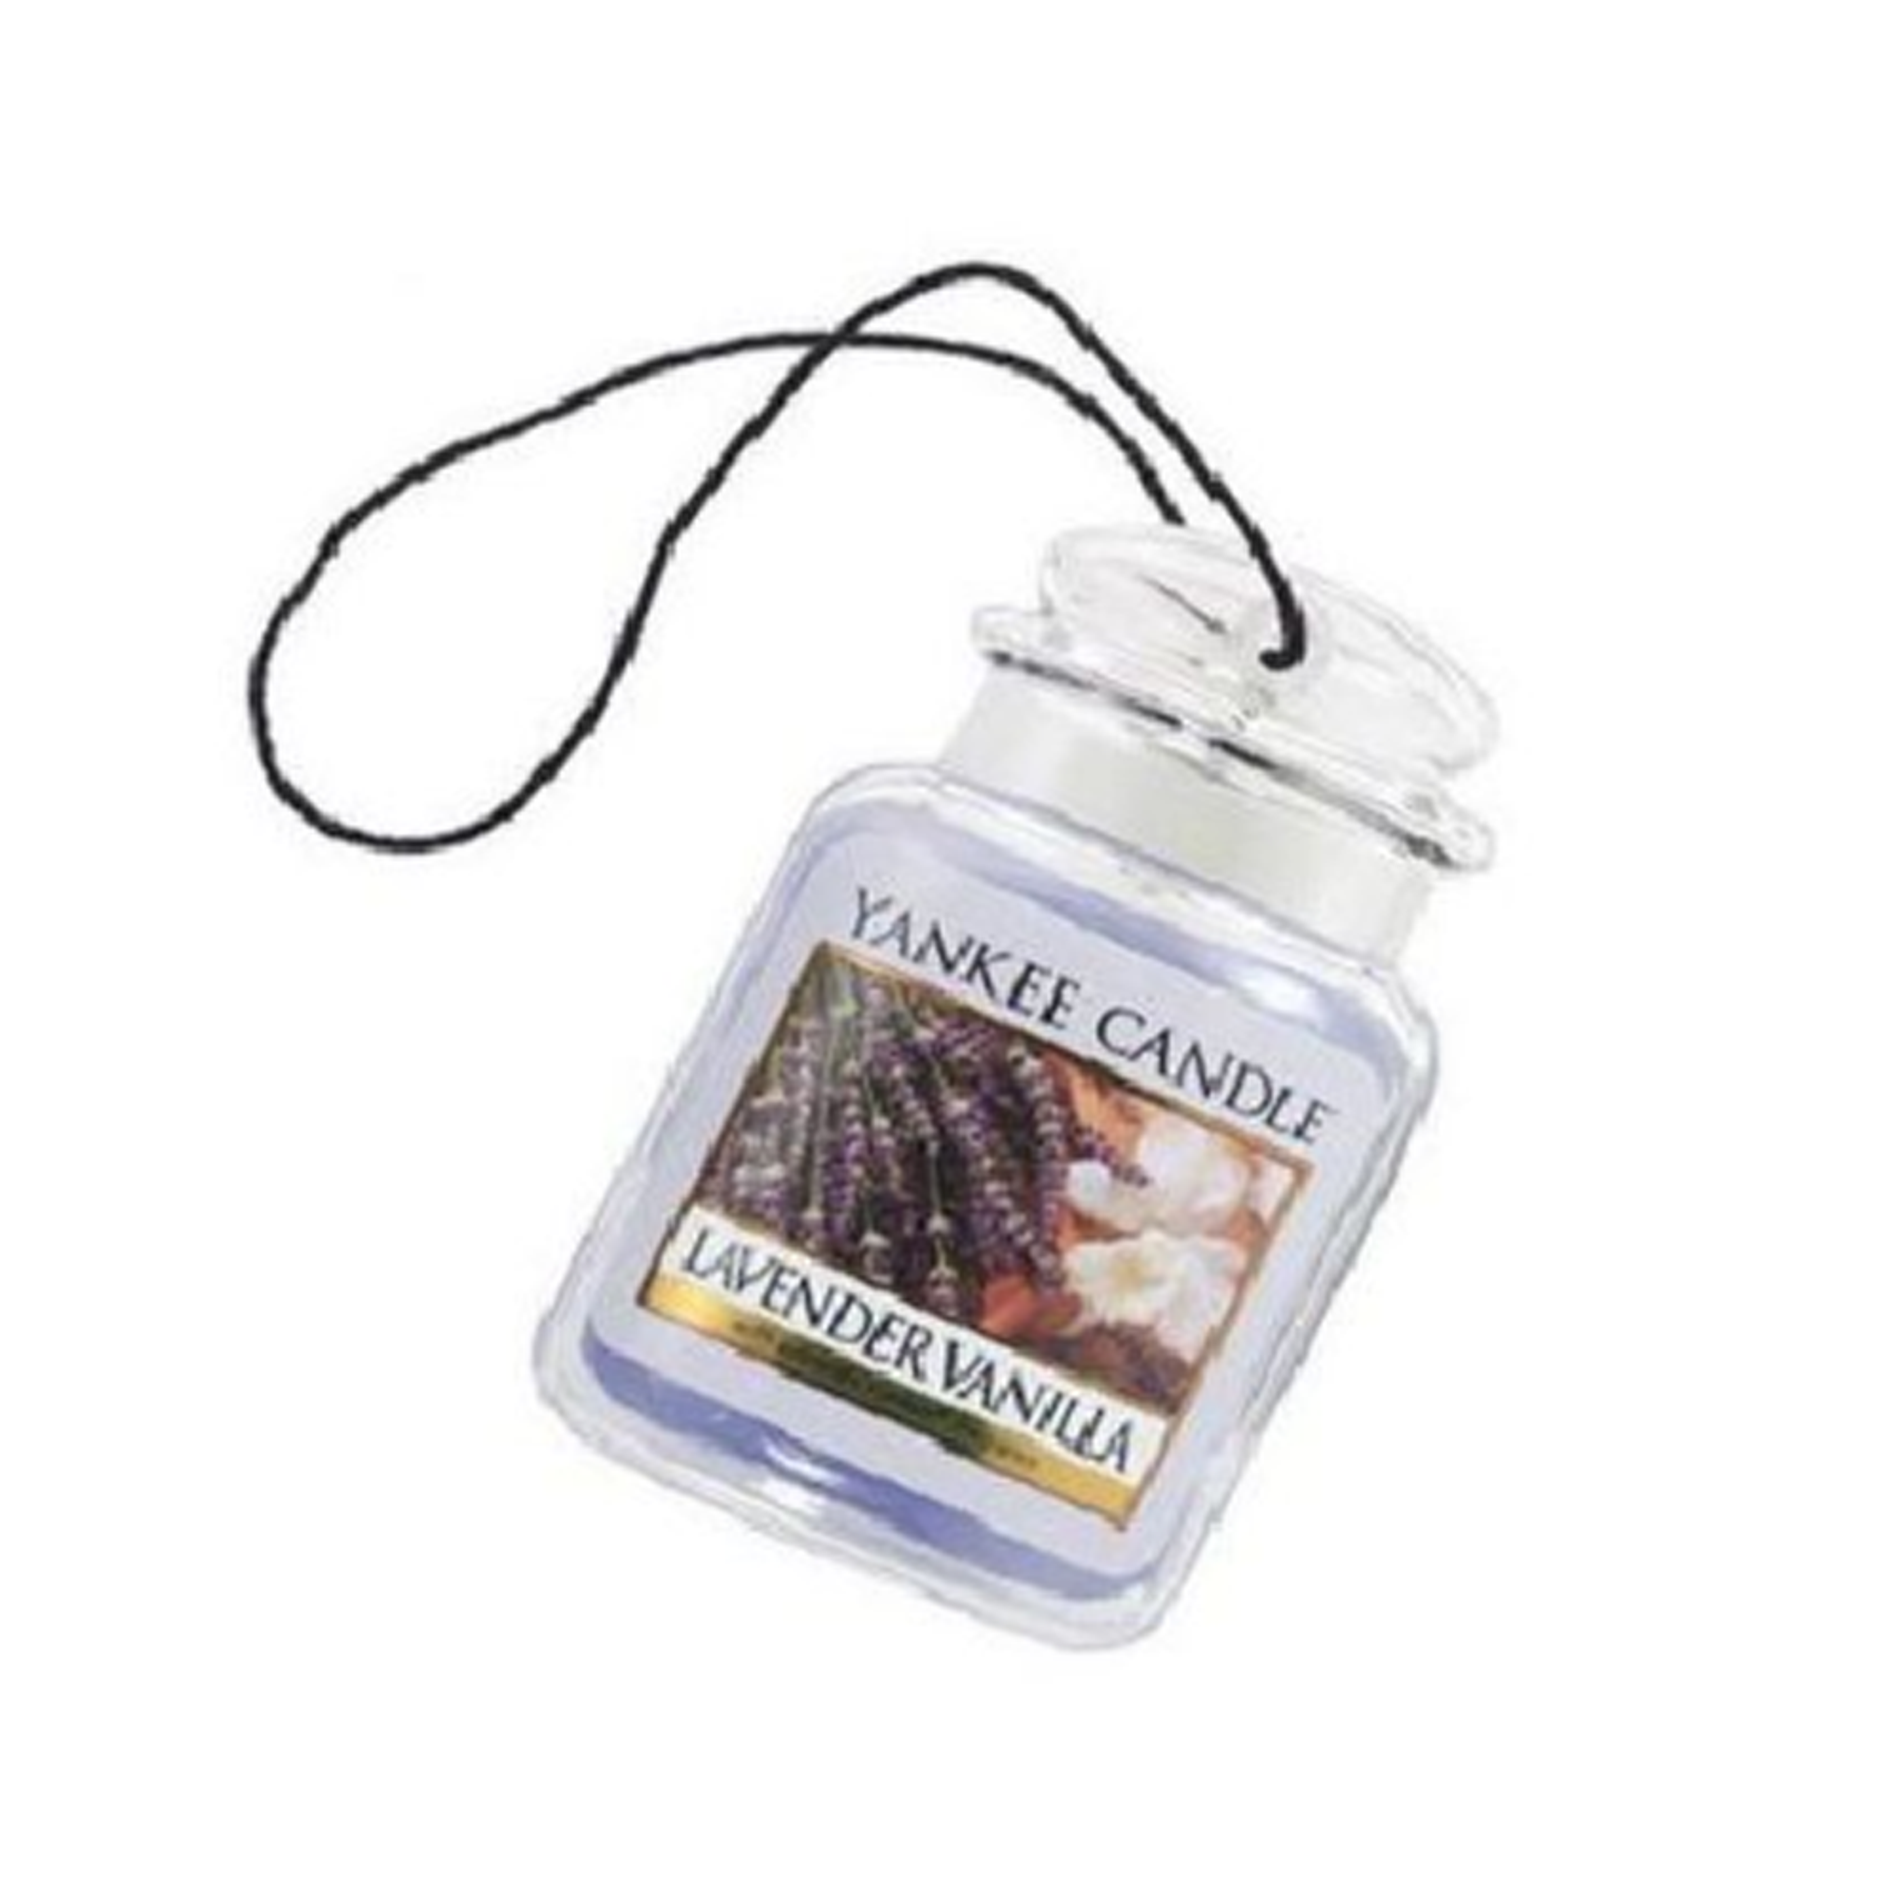 sap-thom-xe-huong-hoa-oai-huong-vani-yankee-car-jar-ultimated-lavender-vanilla-3